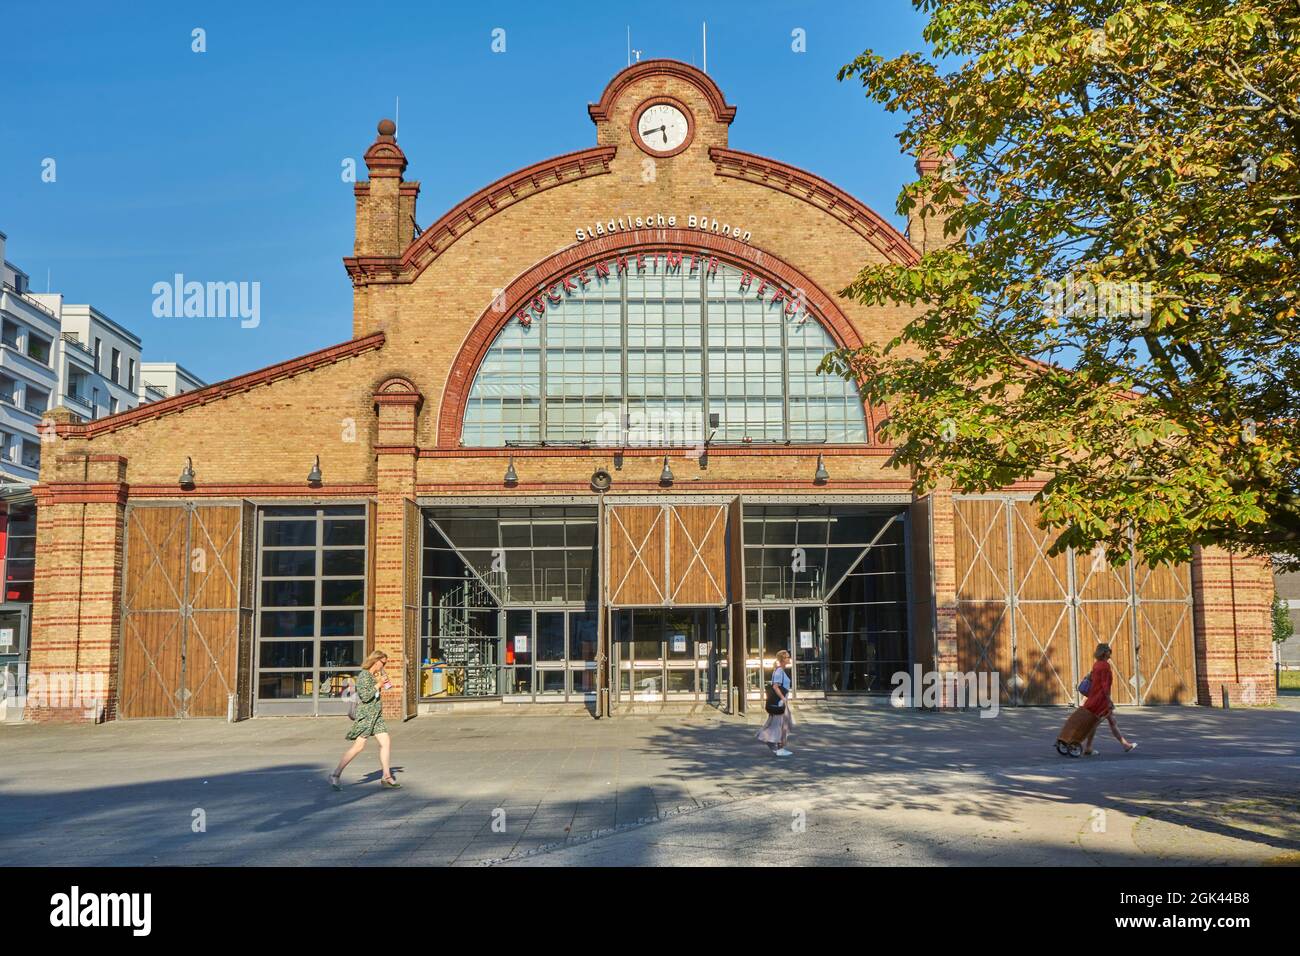 Bockenheimer Depot, Städtische Bühnen, Kulturdenkmal, Carlo-Schmid-Platz, Bockenheim, Frankfurt am Main, Hessen, Deutschland Stock Photo